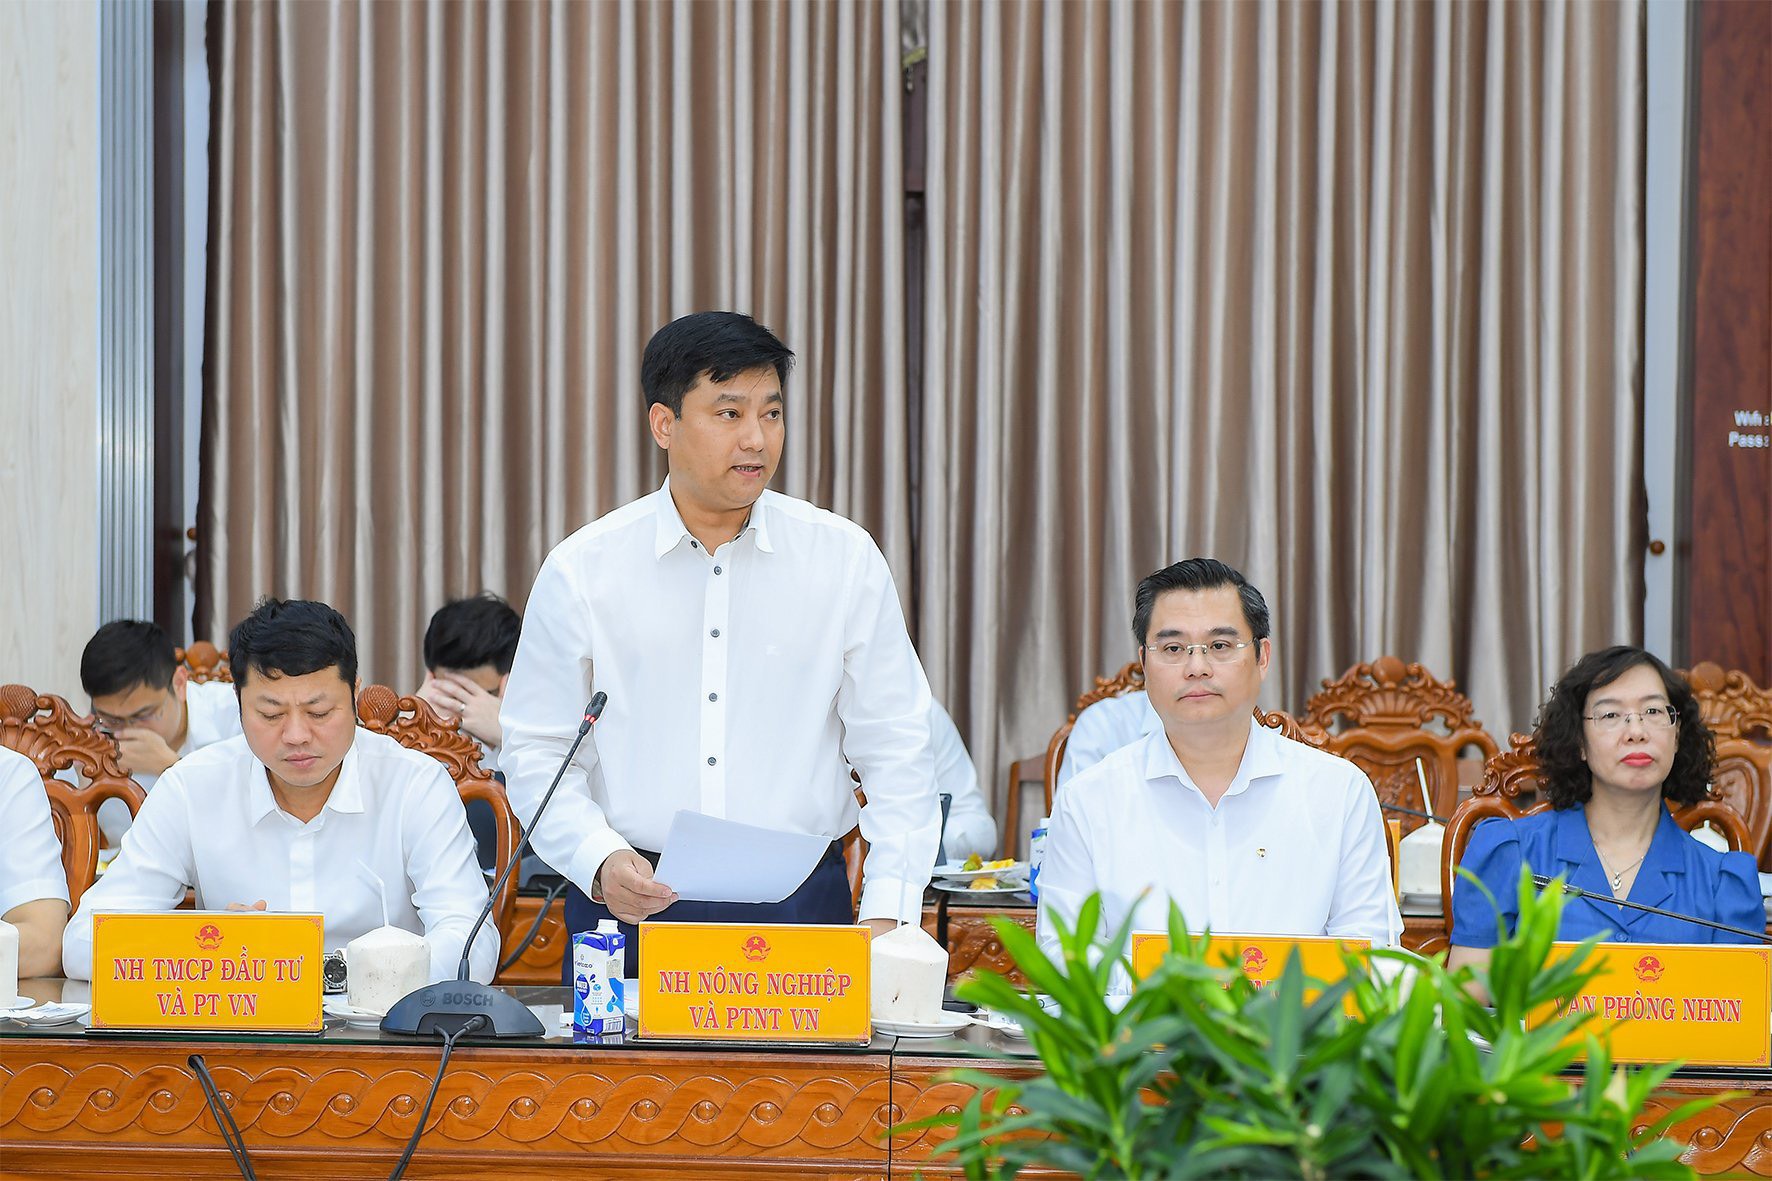 Đồng chí Phạm Toàn Vượng - Tổng Giám đốc Agribank phát biểu tại buổi làm việc.